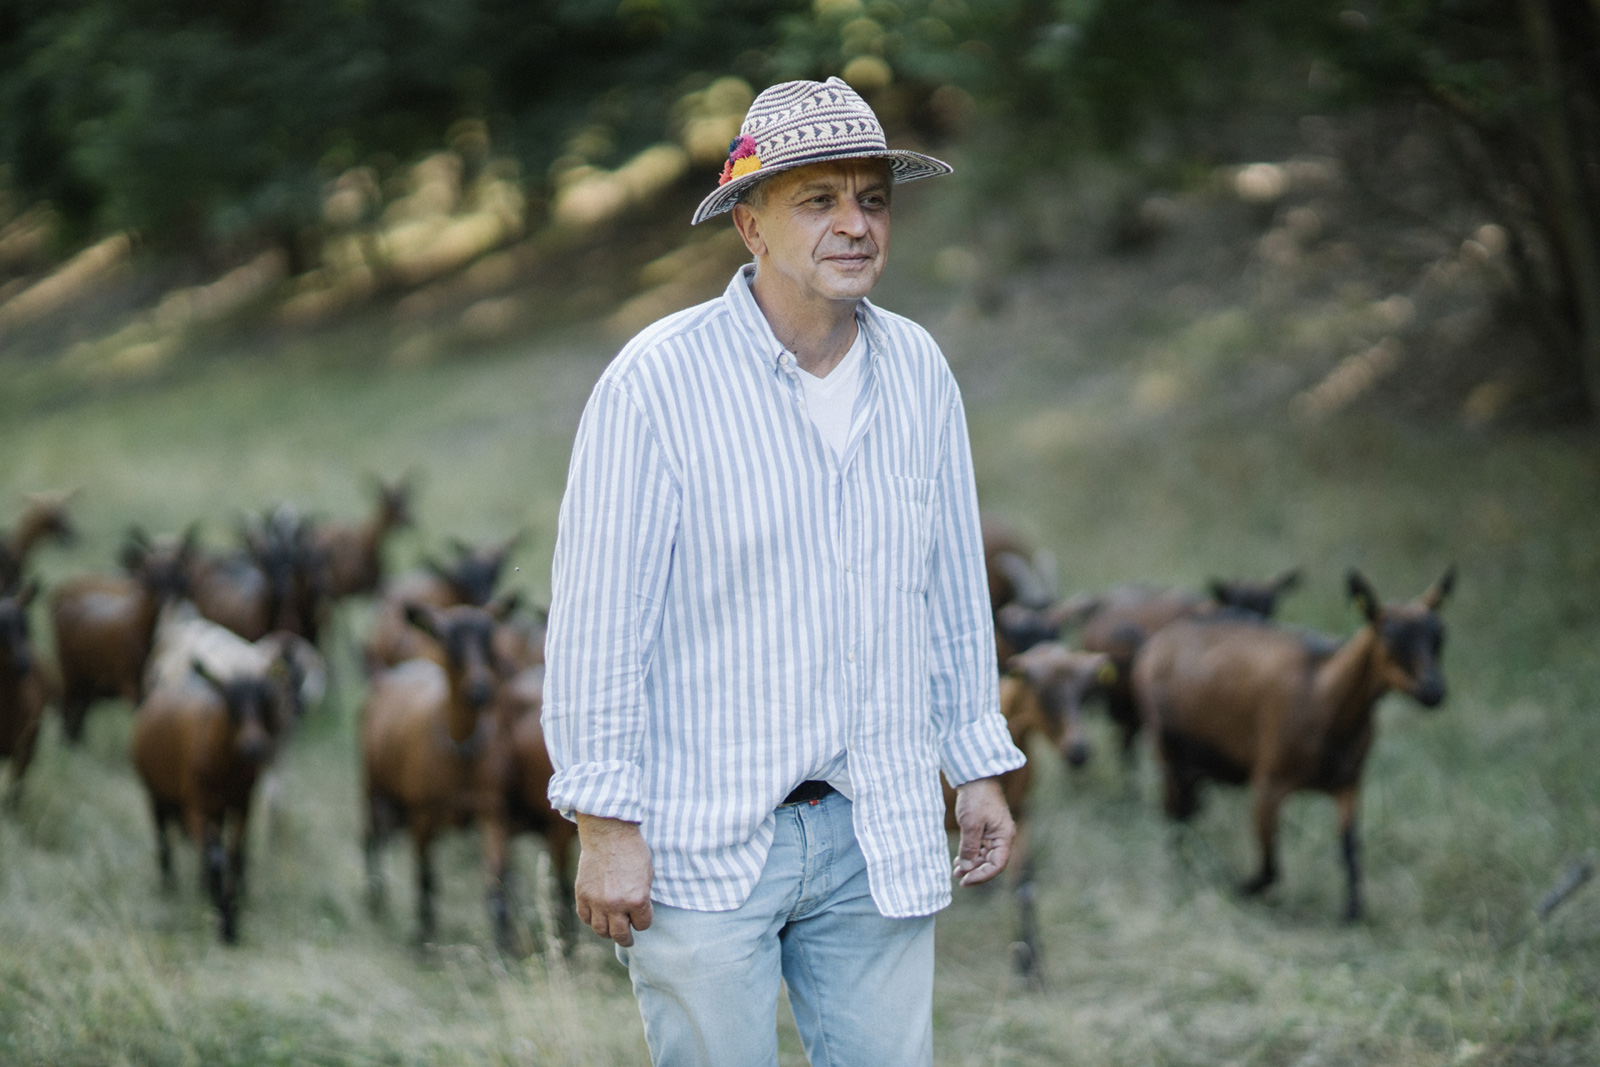 Олександр Лукач – молодий фермер, який після десятиліть роботи в інших сферах захотів працювати у селі, пасти кіз і створювати своїми руками молочні продукти.